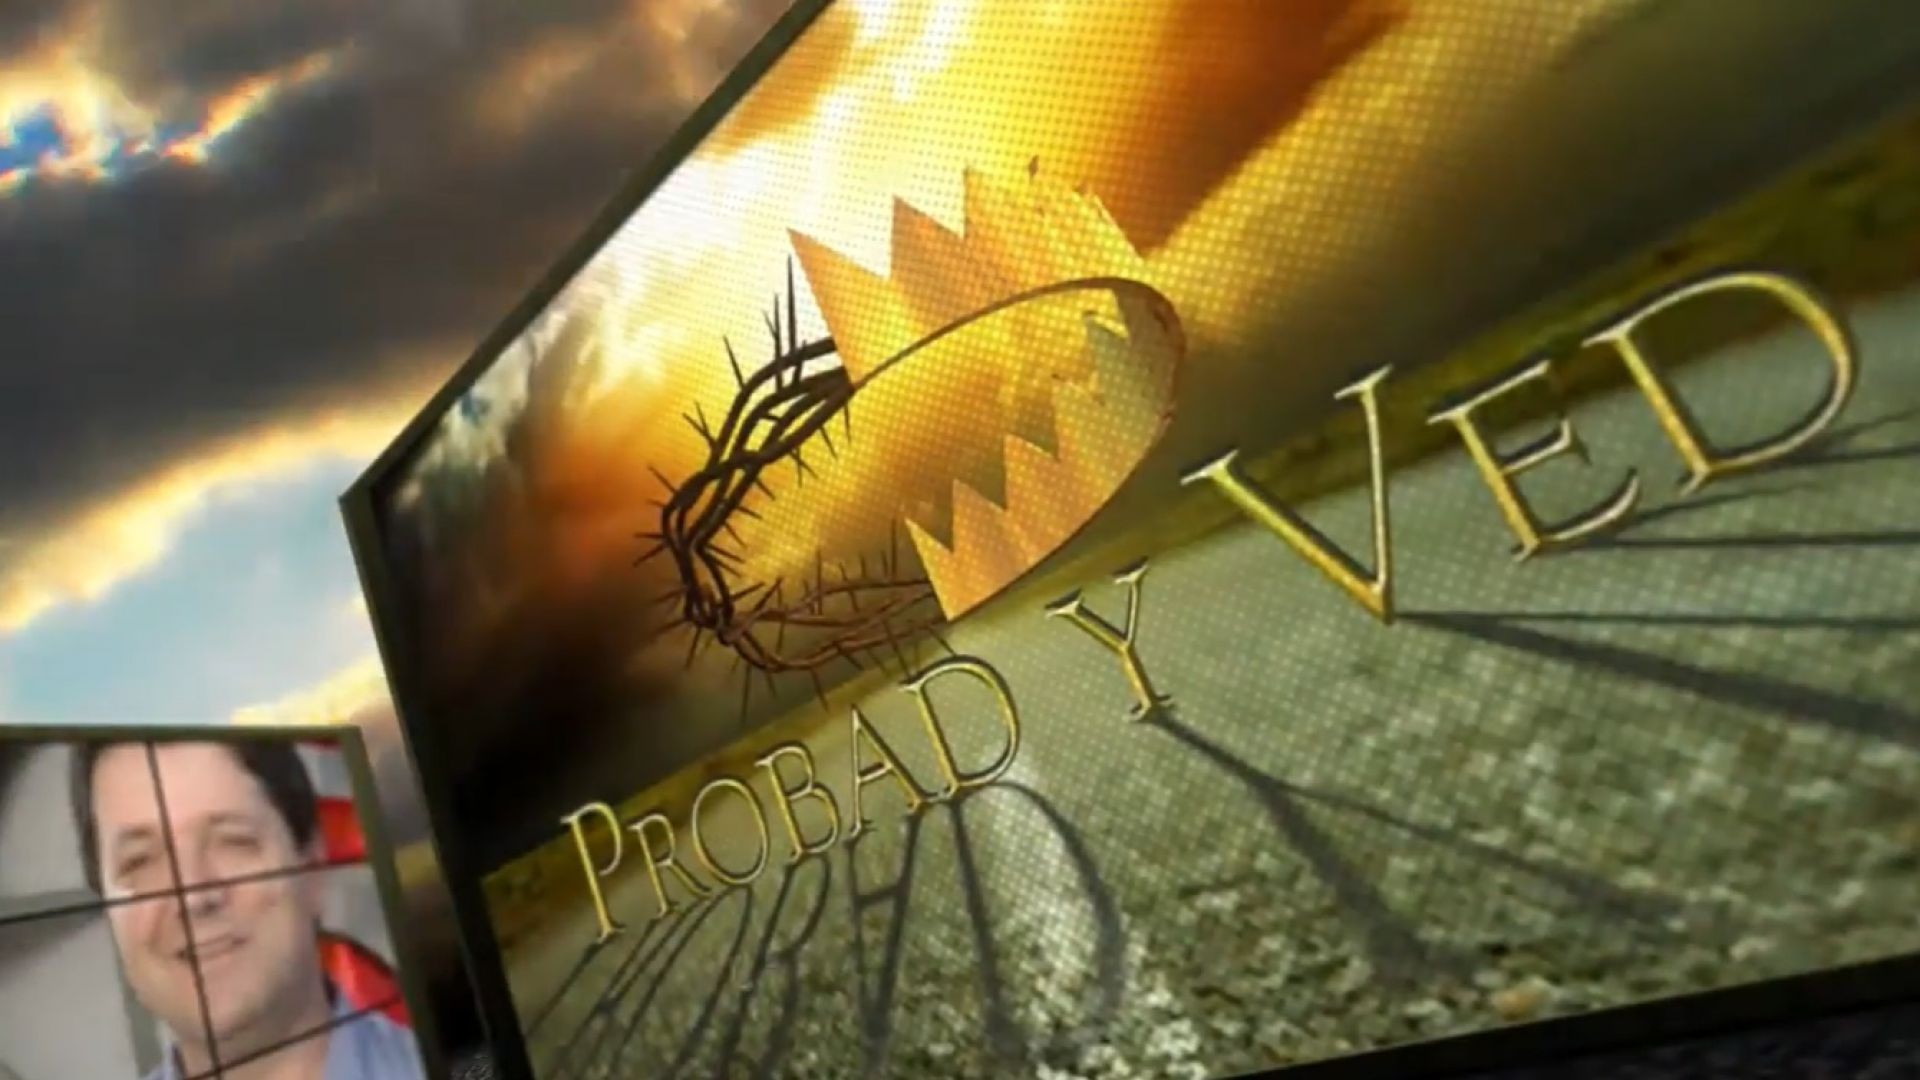 ⁣Probad y Ved 2012 - Un ejemplo de mision